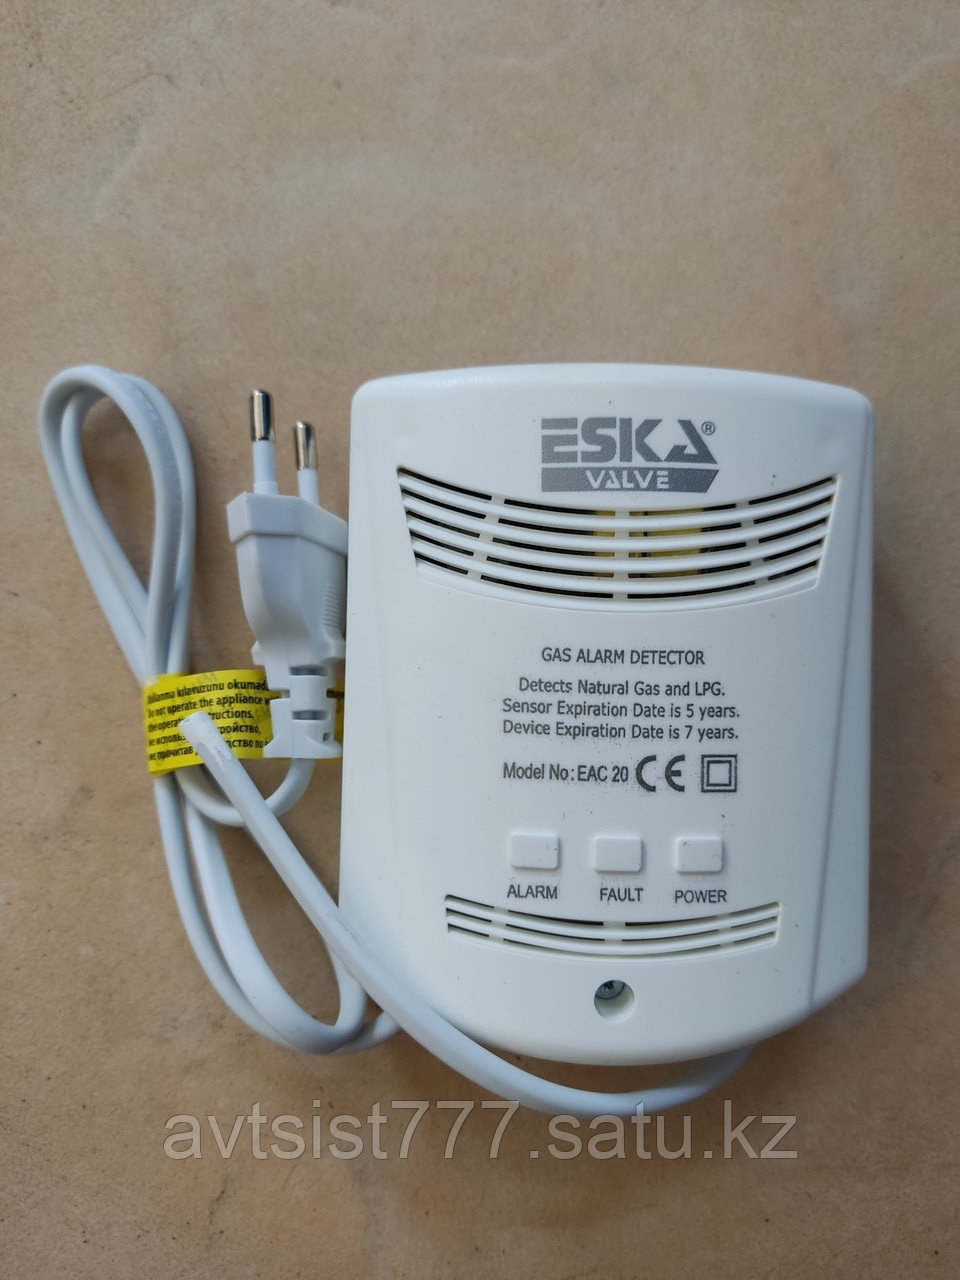 Сигнализатор газа бытовой DN20 ESKA (Турция)